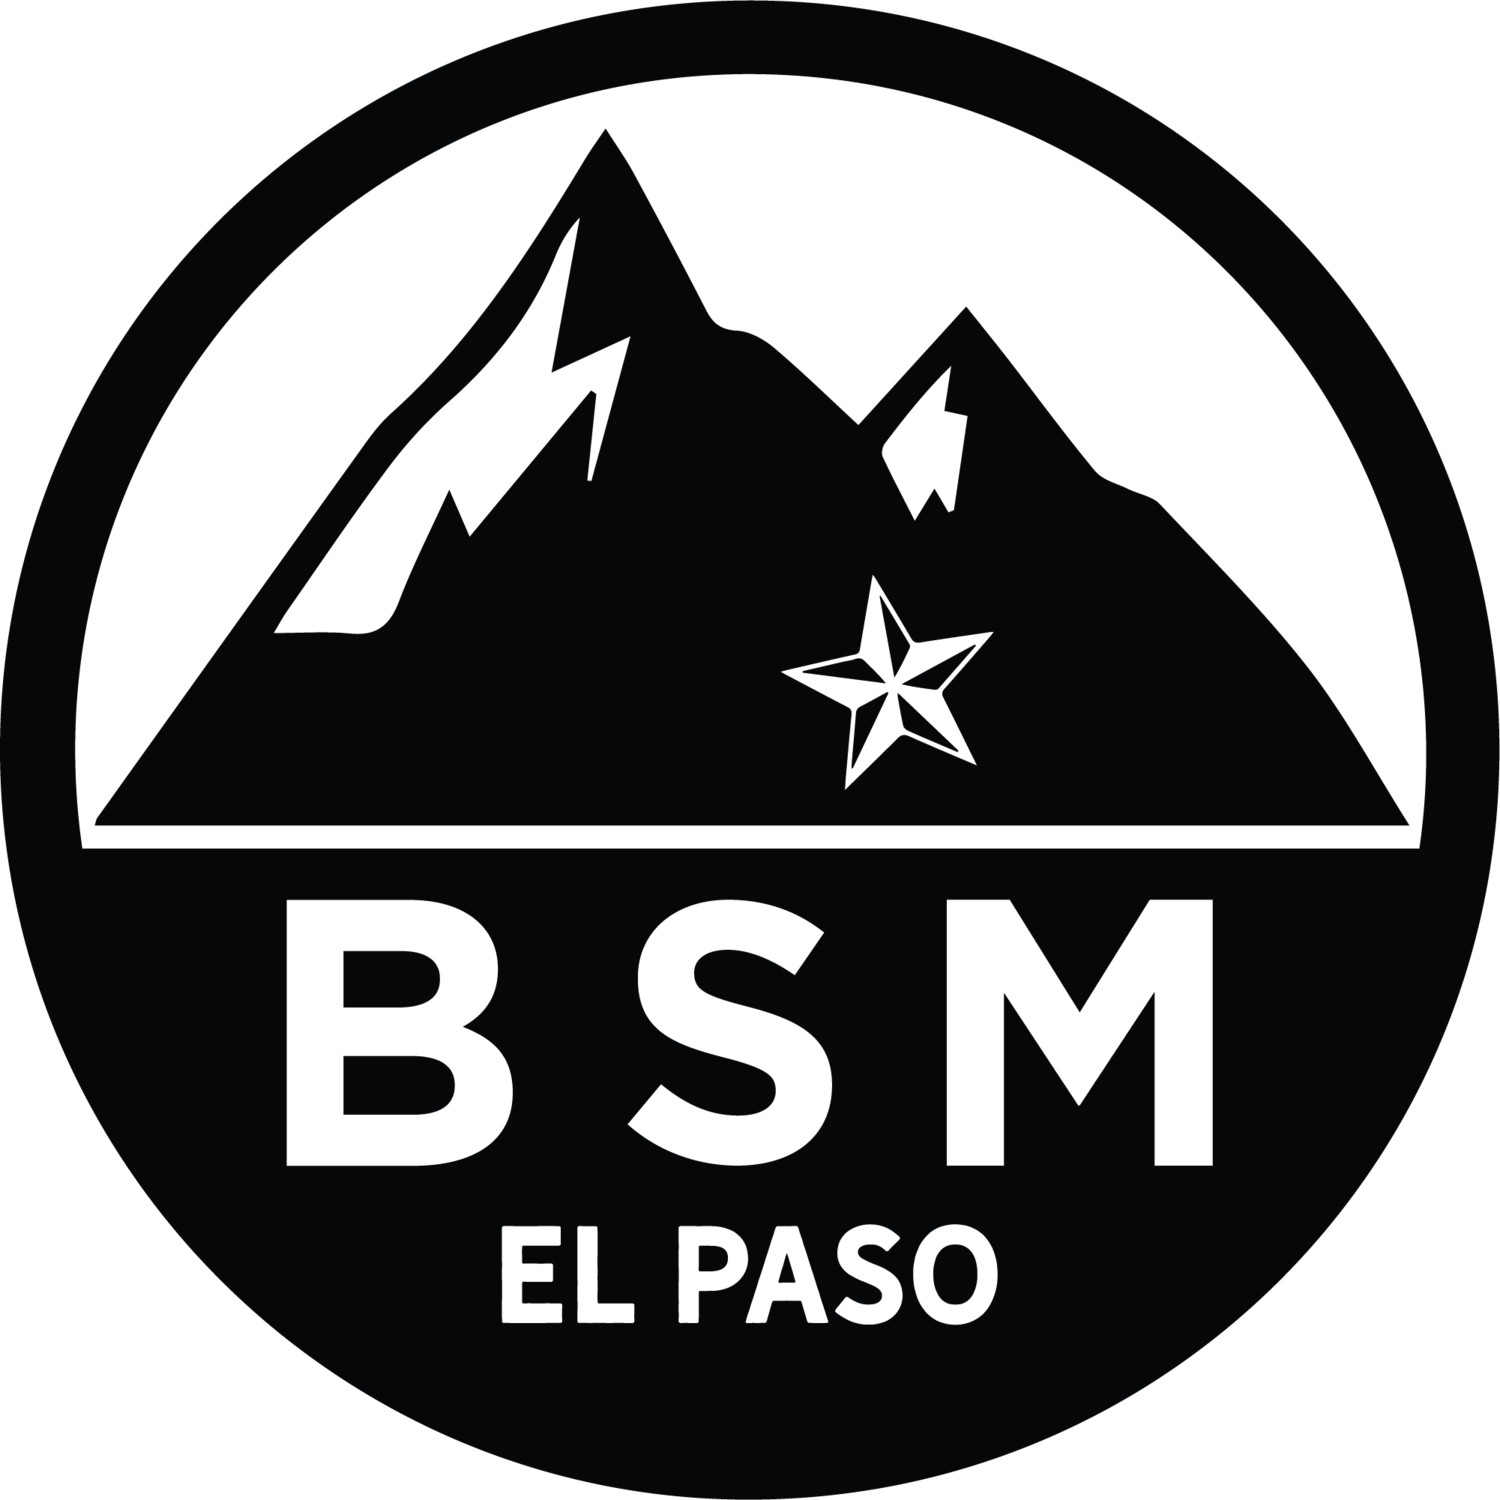 BSM at El Paso